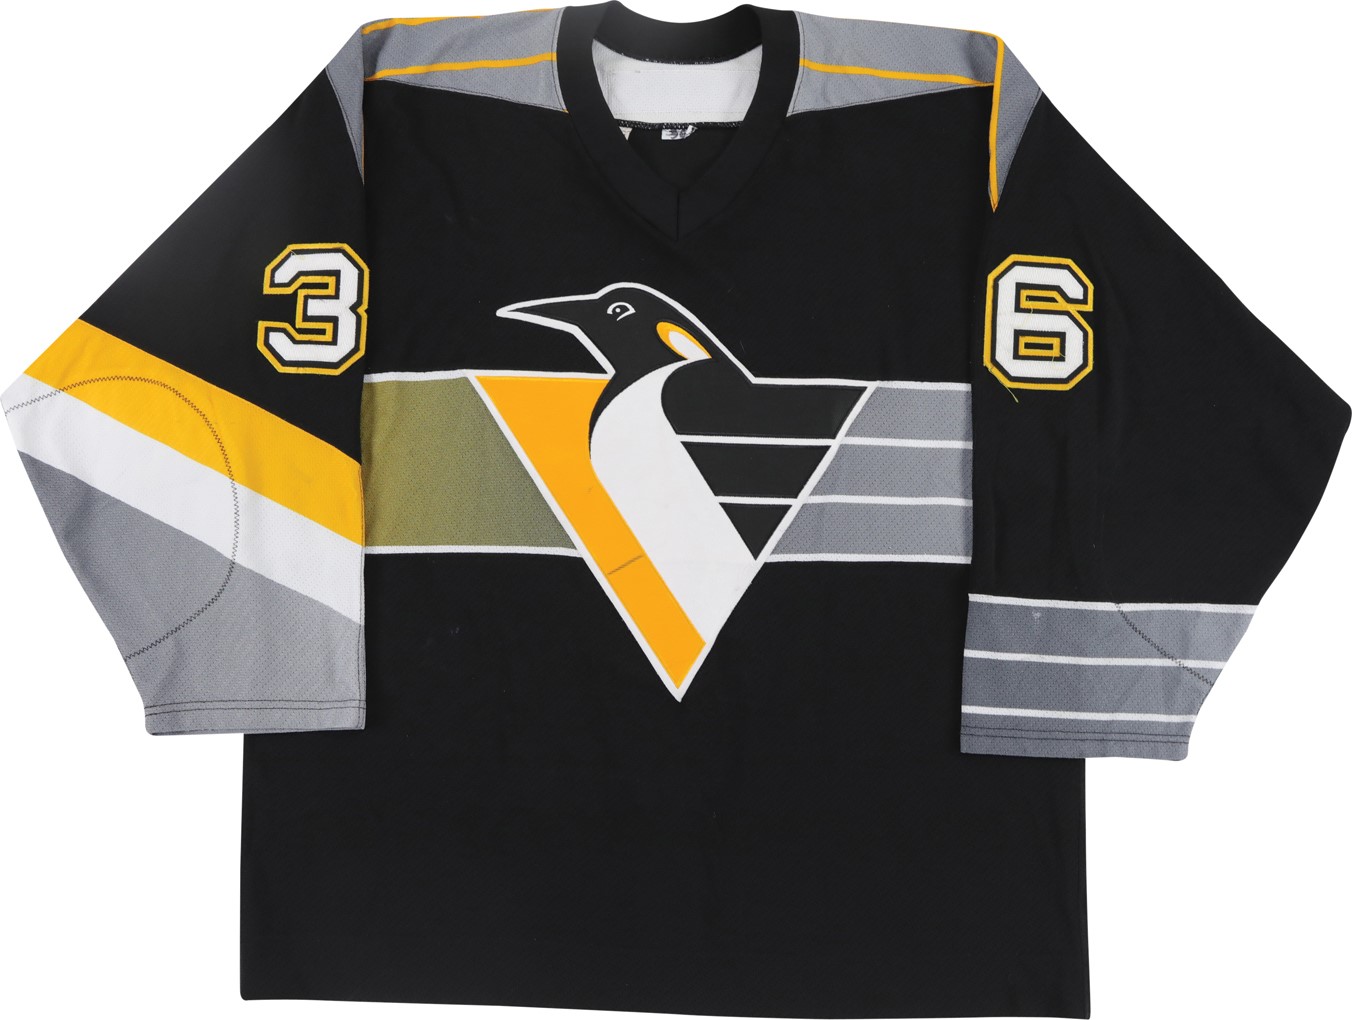 Hockey - 2000-01 Matthew Barnaby Pittsburgh Penguins Game Worn Jersey